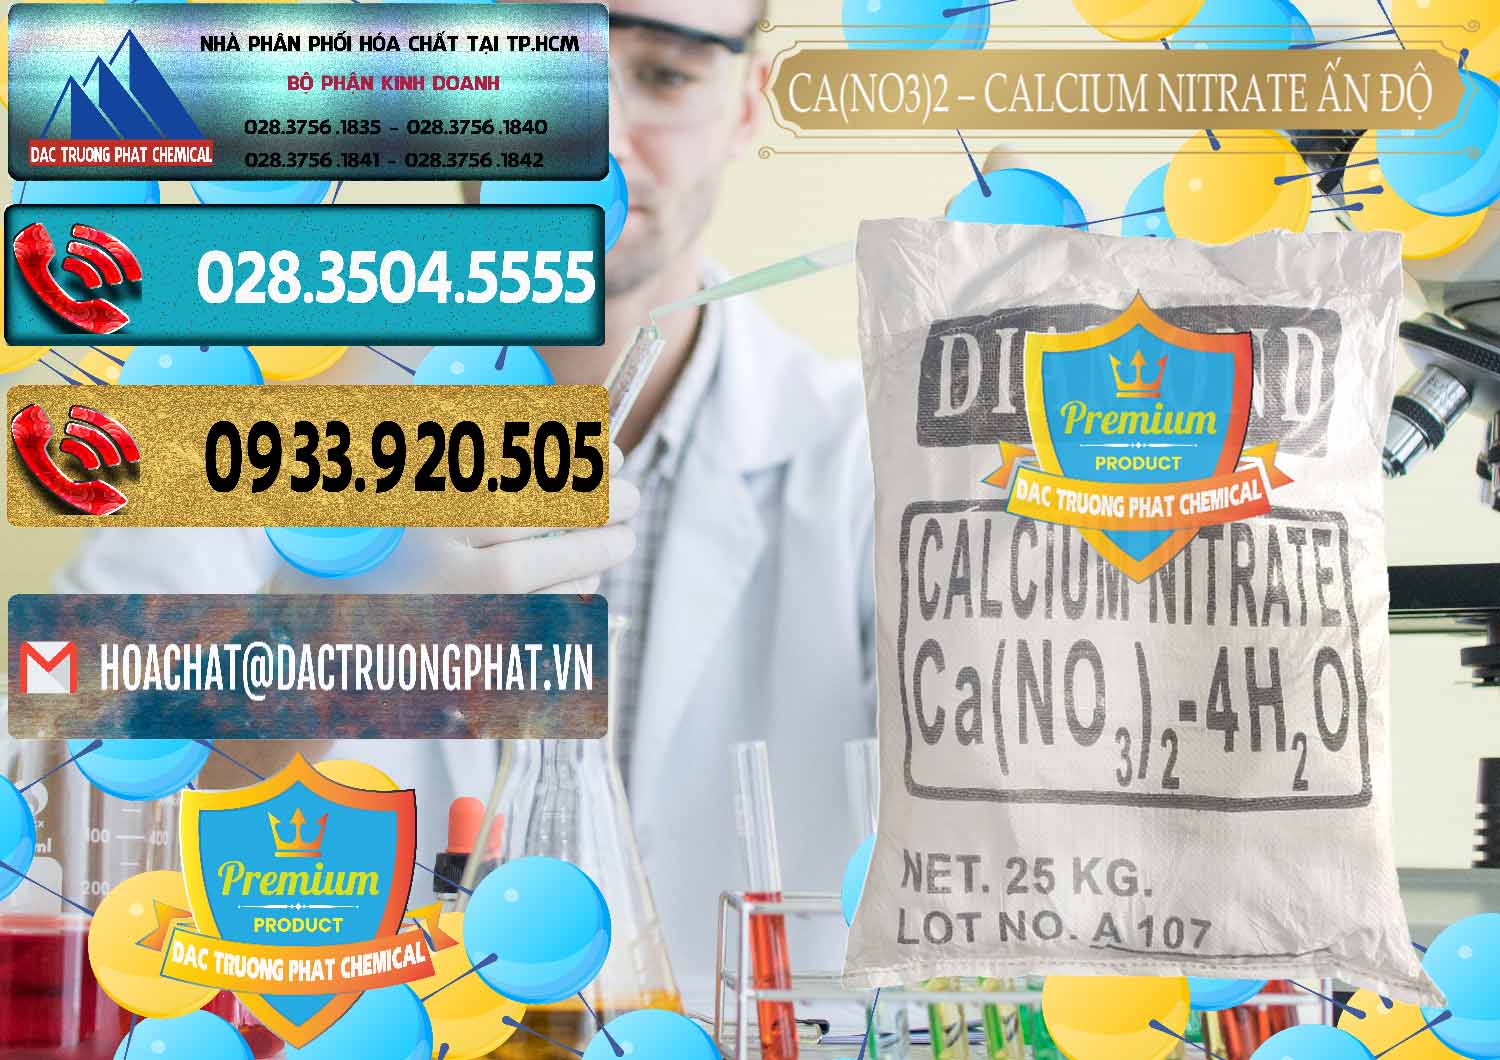 Công ty chuyên kinh doanh & bán CA(NO3)2 – Calcium Nitrate Ấn Độ India - 0038 - Công ty chuyên bán _ phân phối hóa chất tại TP.HCM - hoachatdetnhuom.com